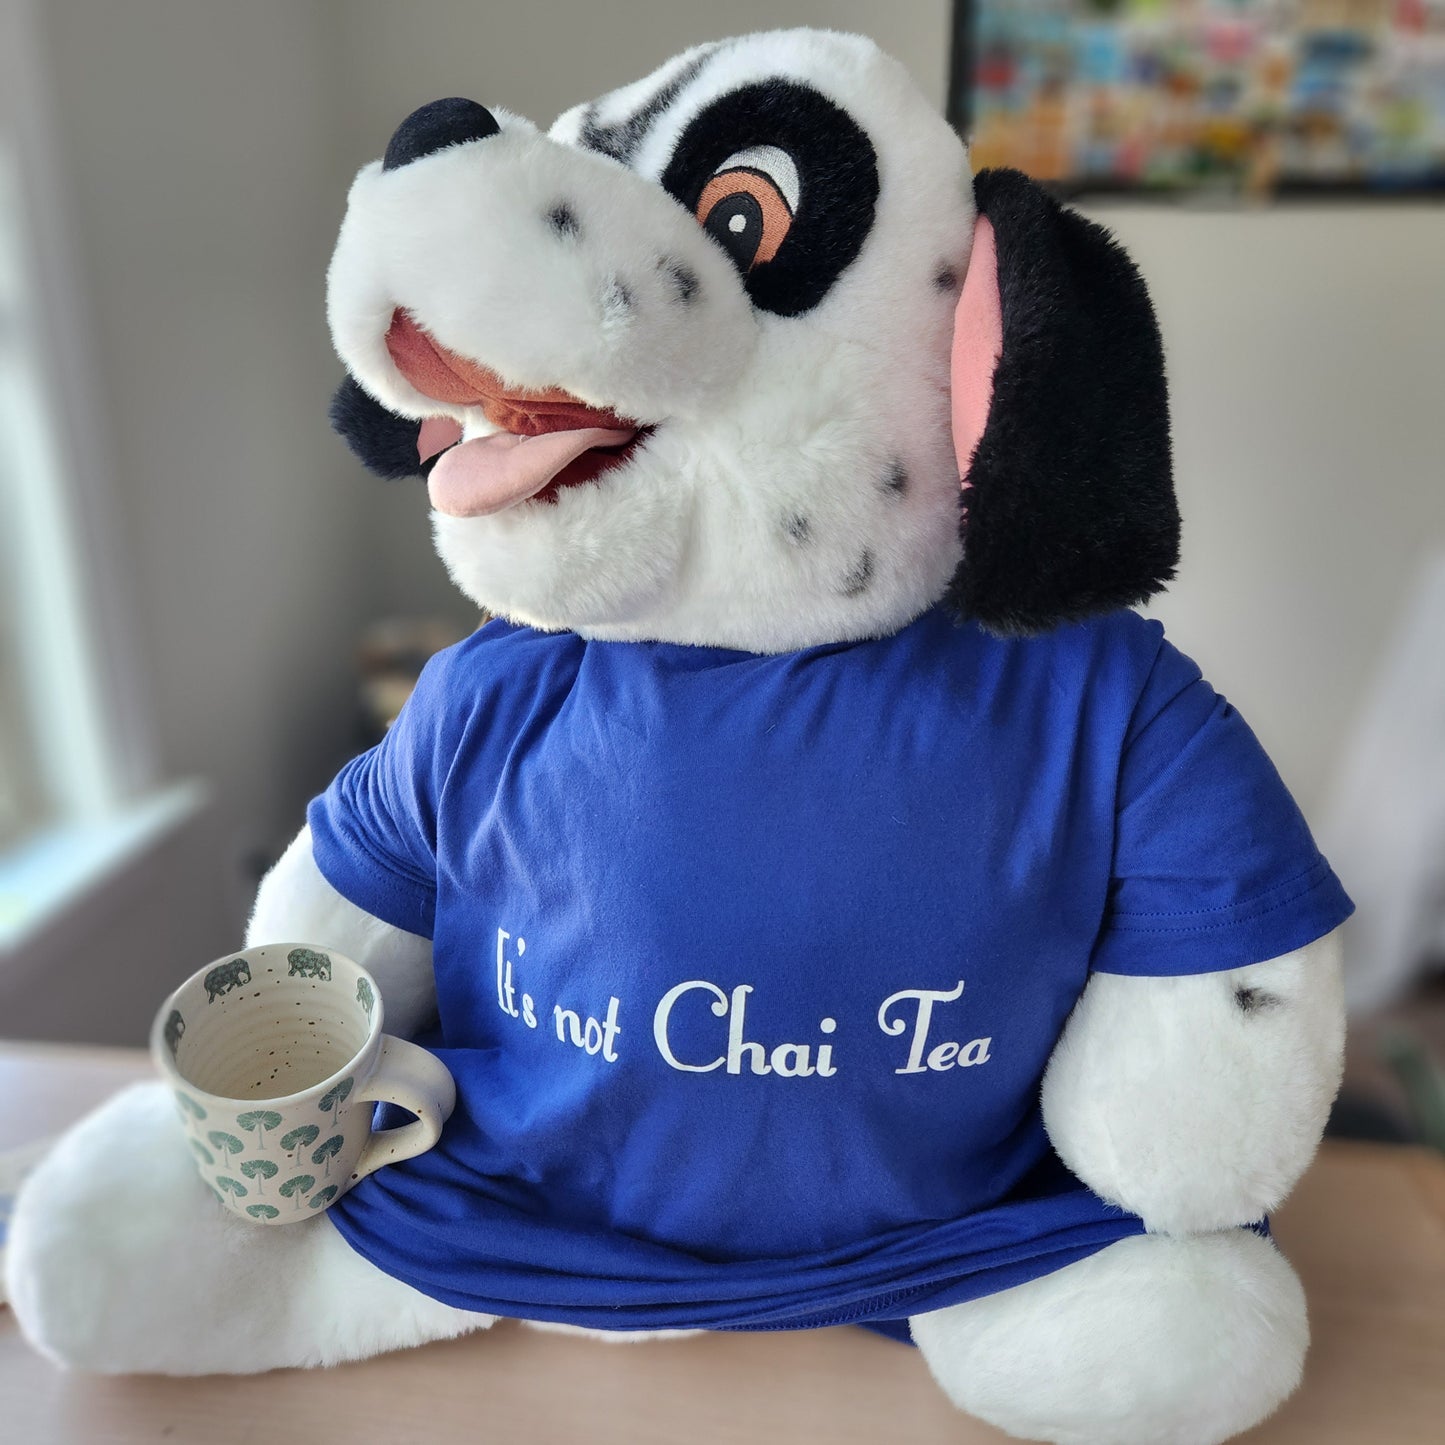 "It's Not Chai Tea" T-Shirt